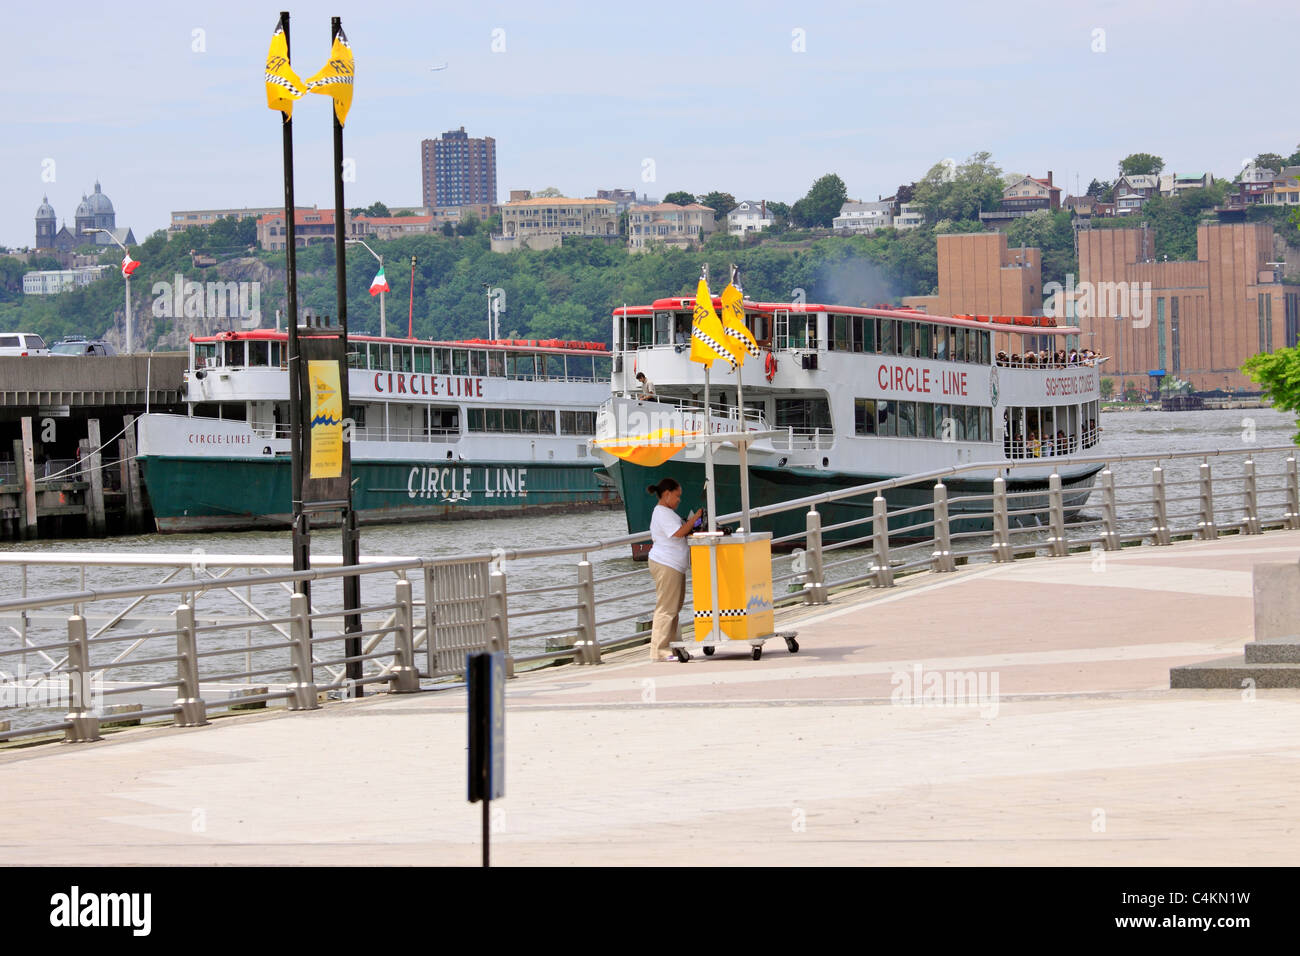 Bateaux de croisière Circle Line sightseeing prête à partir de Pier 83 sur la rivière Hudson Manhattan New York Banque D'Images